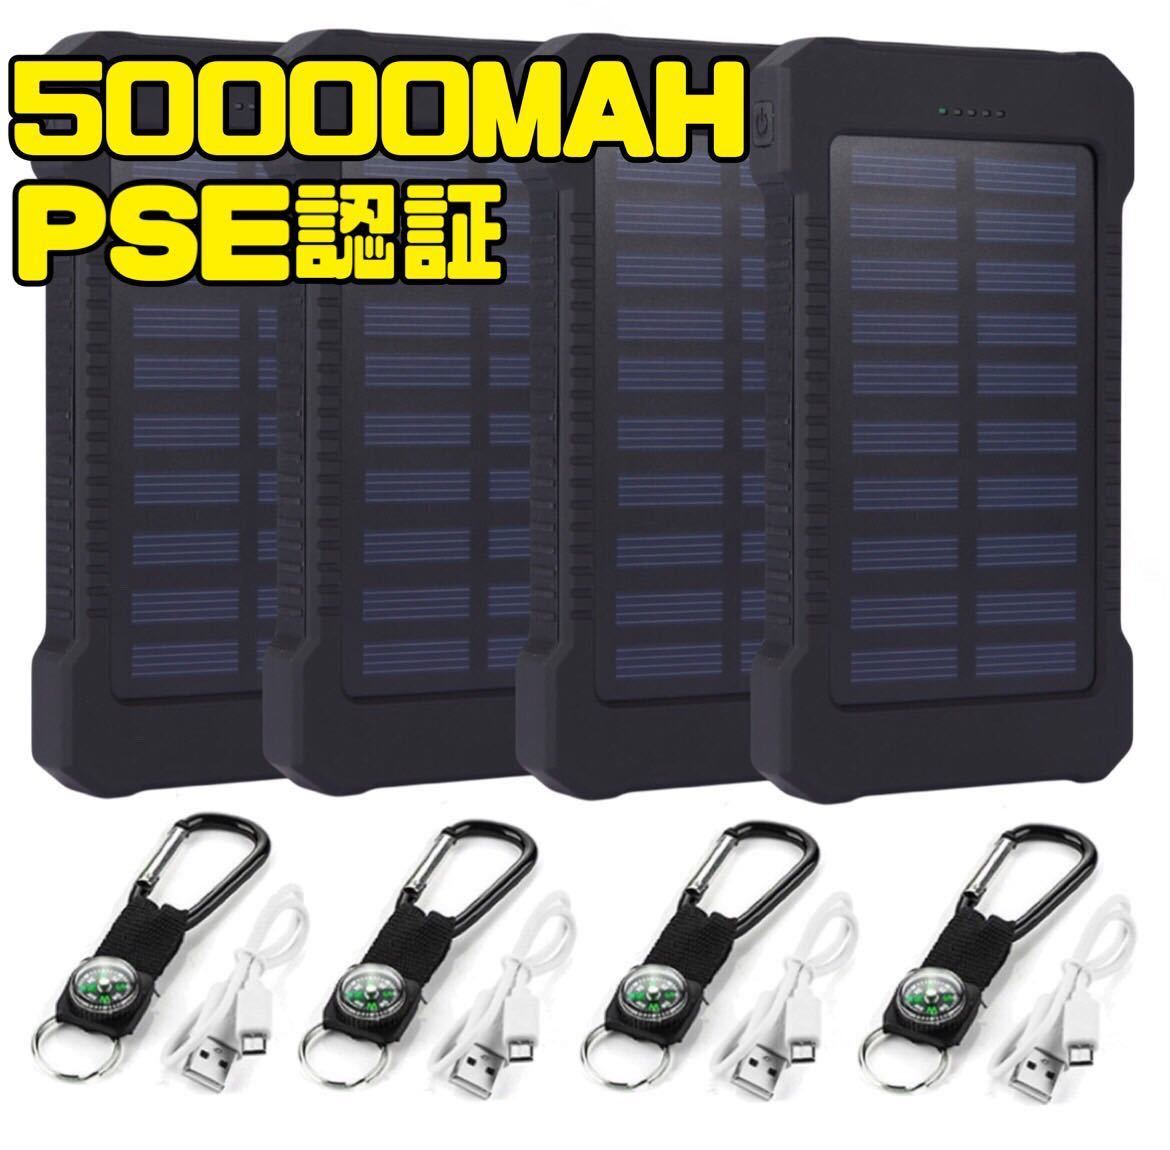 最新のデザイン ポート USB ソーラーパネル 2.1A 50000mAh 2台同時充電 急速充電 ソーラー充電 4個 モバイルバッテリー LEDライト PSE認証 太陽光充電 ソーラー式充電器